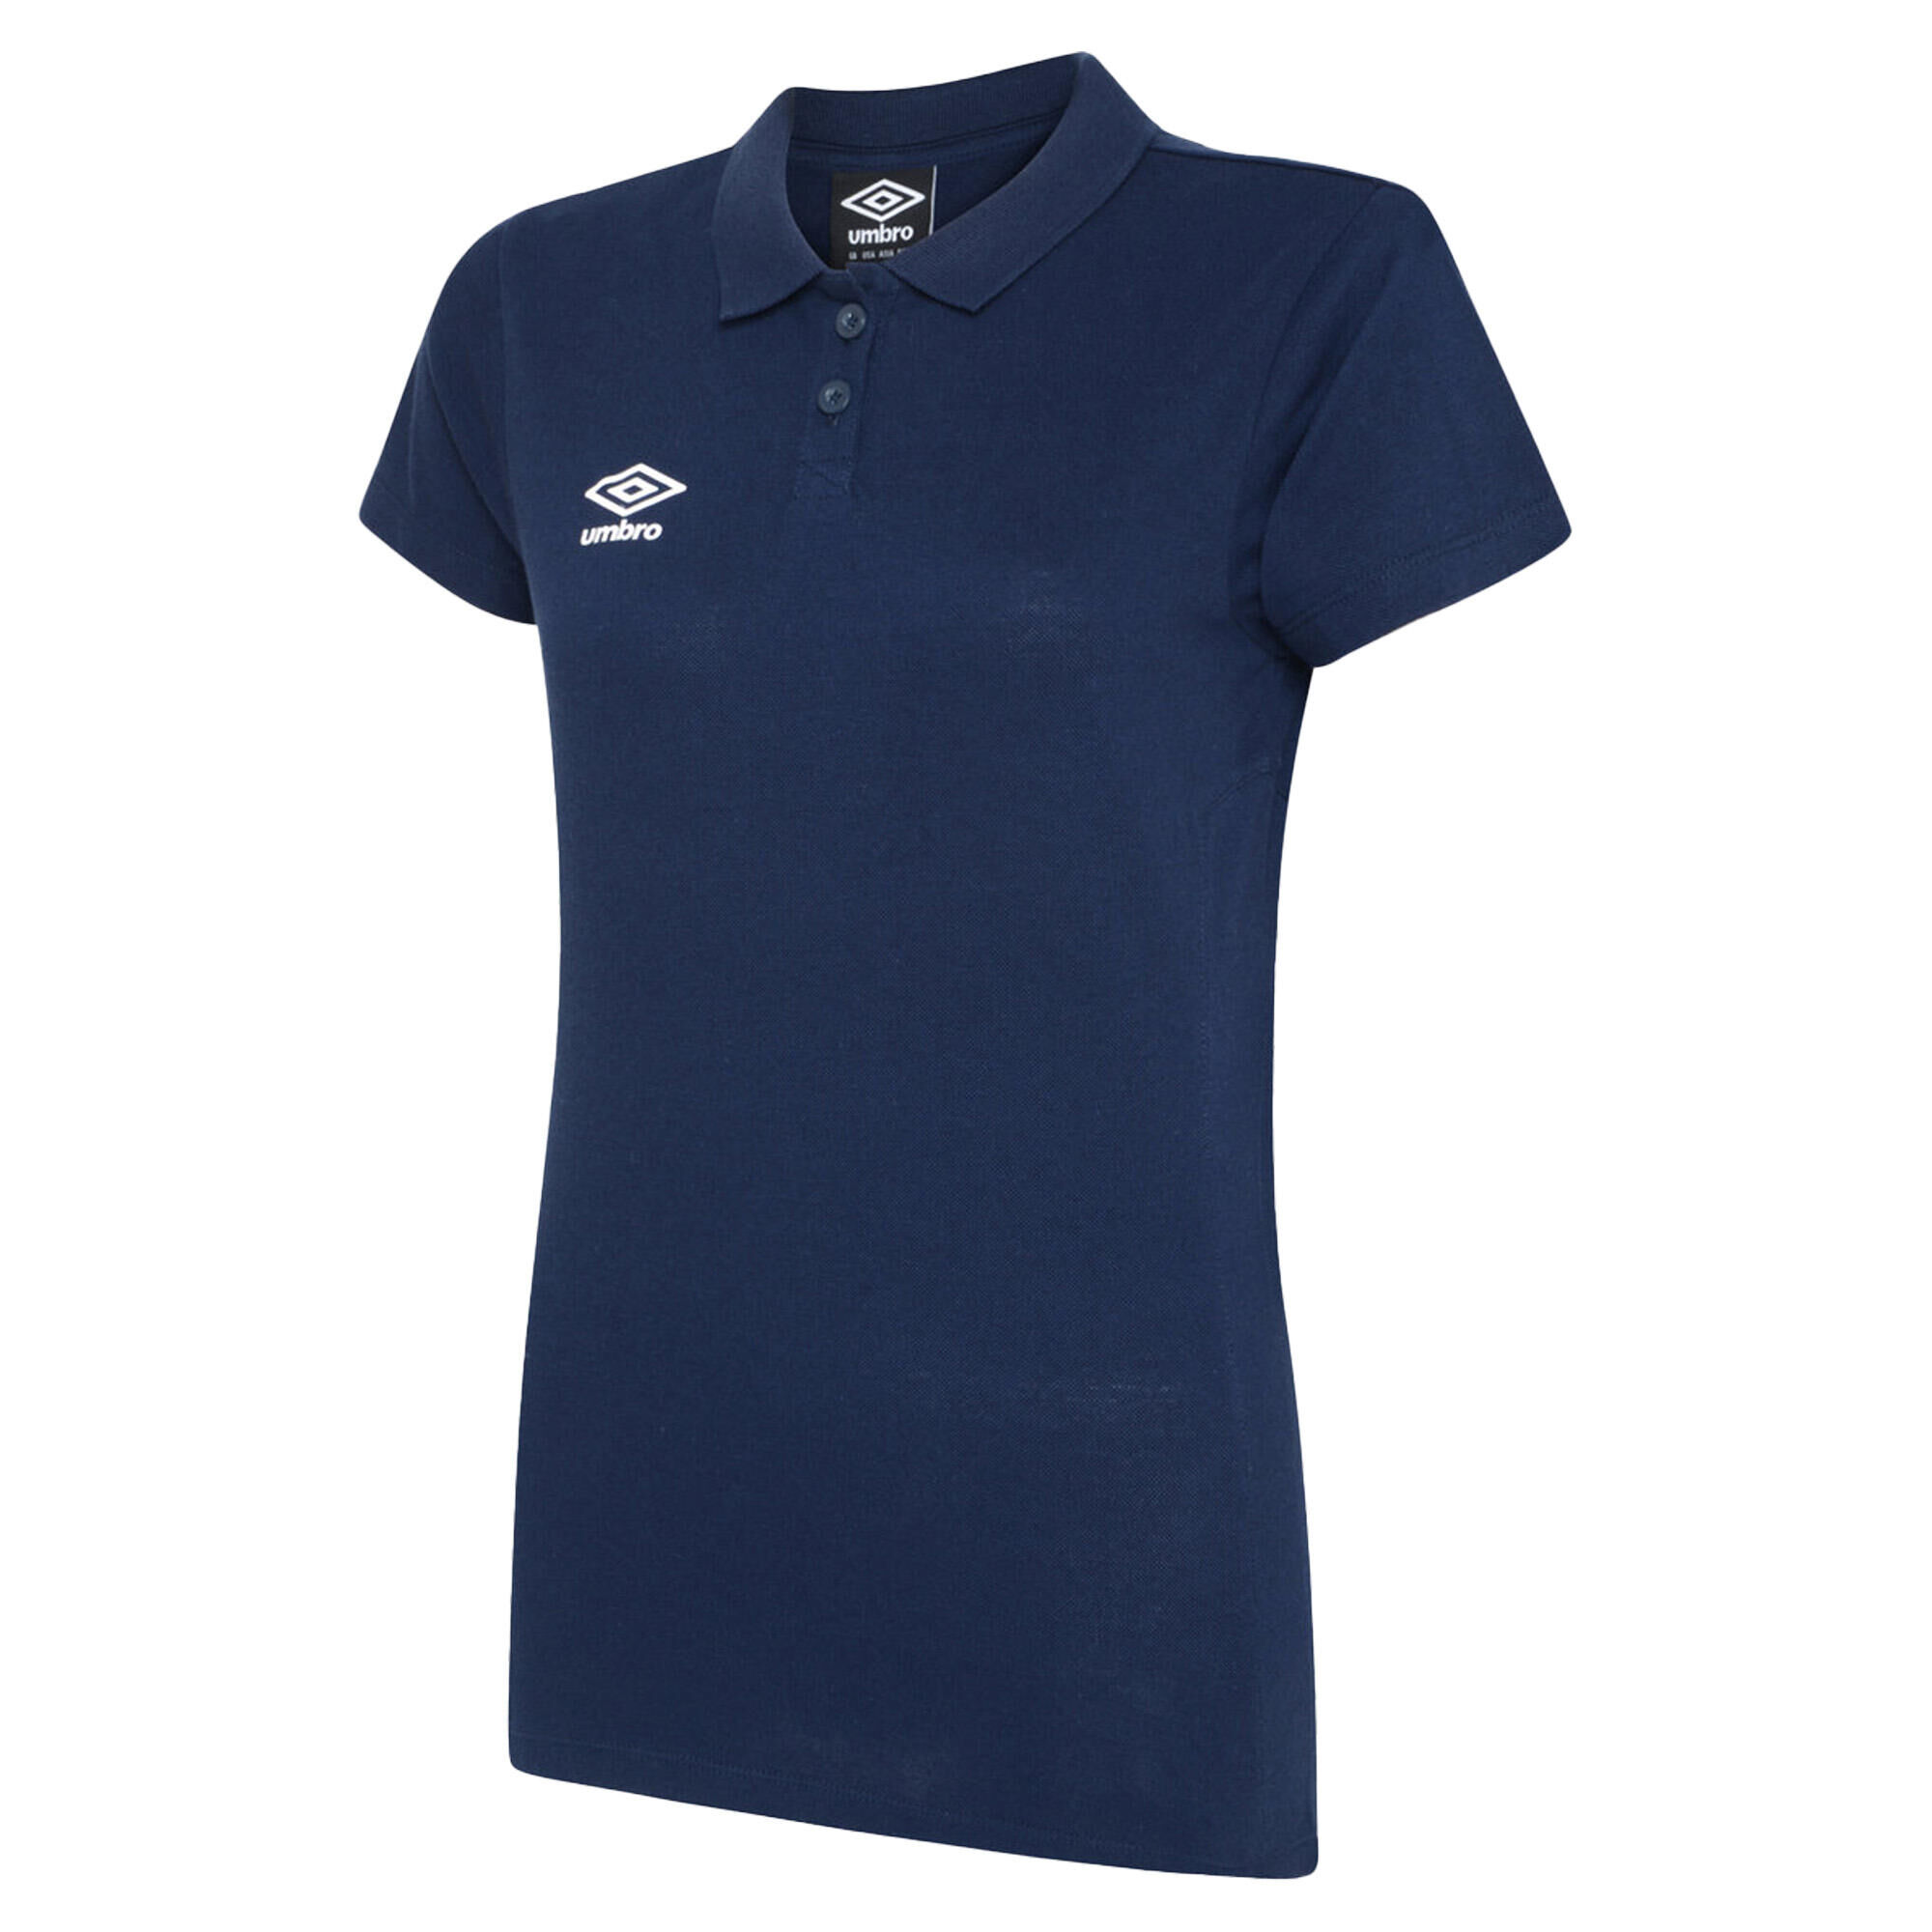 UMBRO Womens/Ladies Club Essential Polo Shirt (Dark Navy/White)